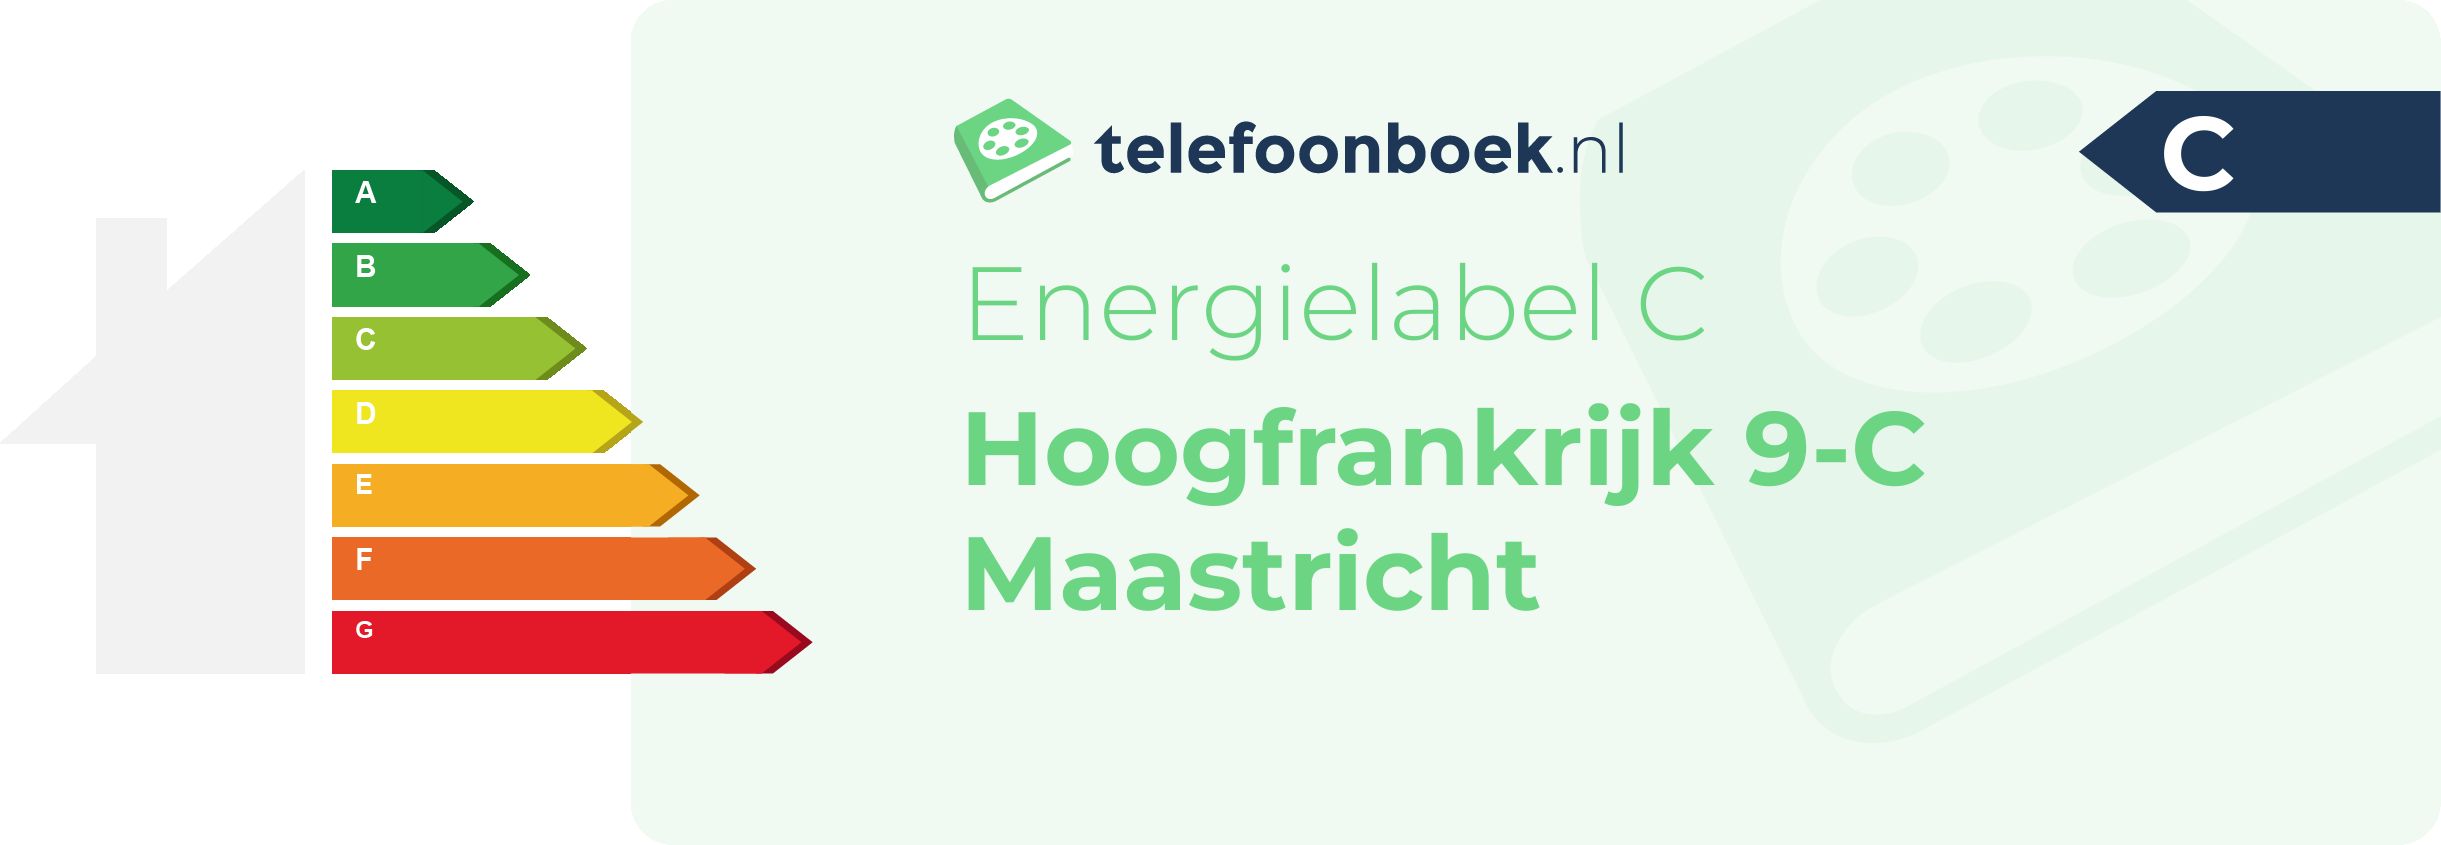 Energielabel Hoogfrankrijk 9-C Maastricht